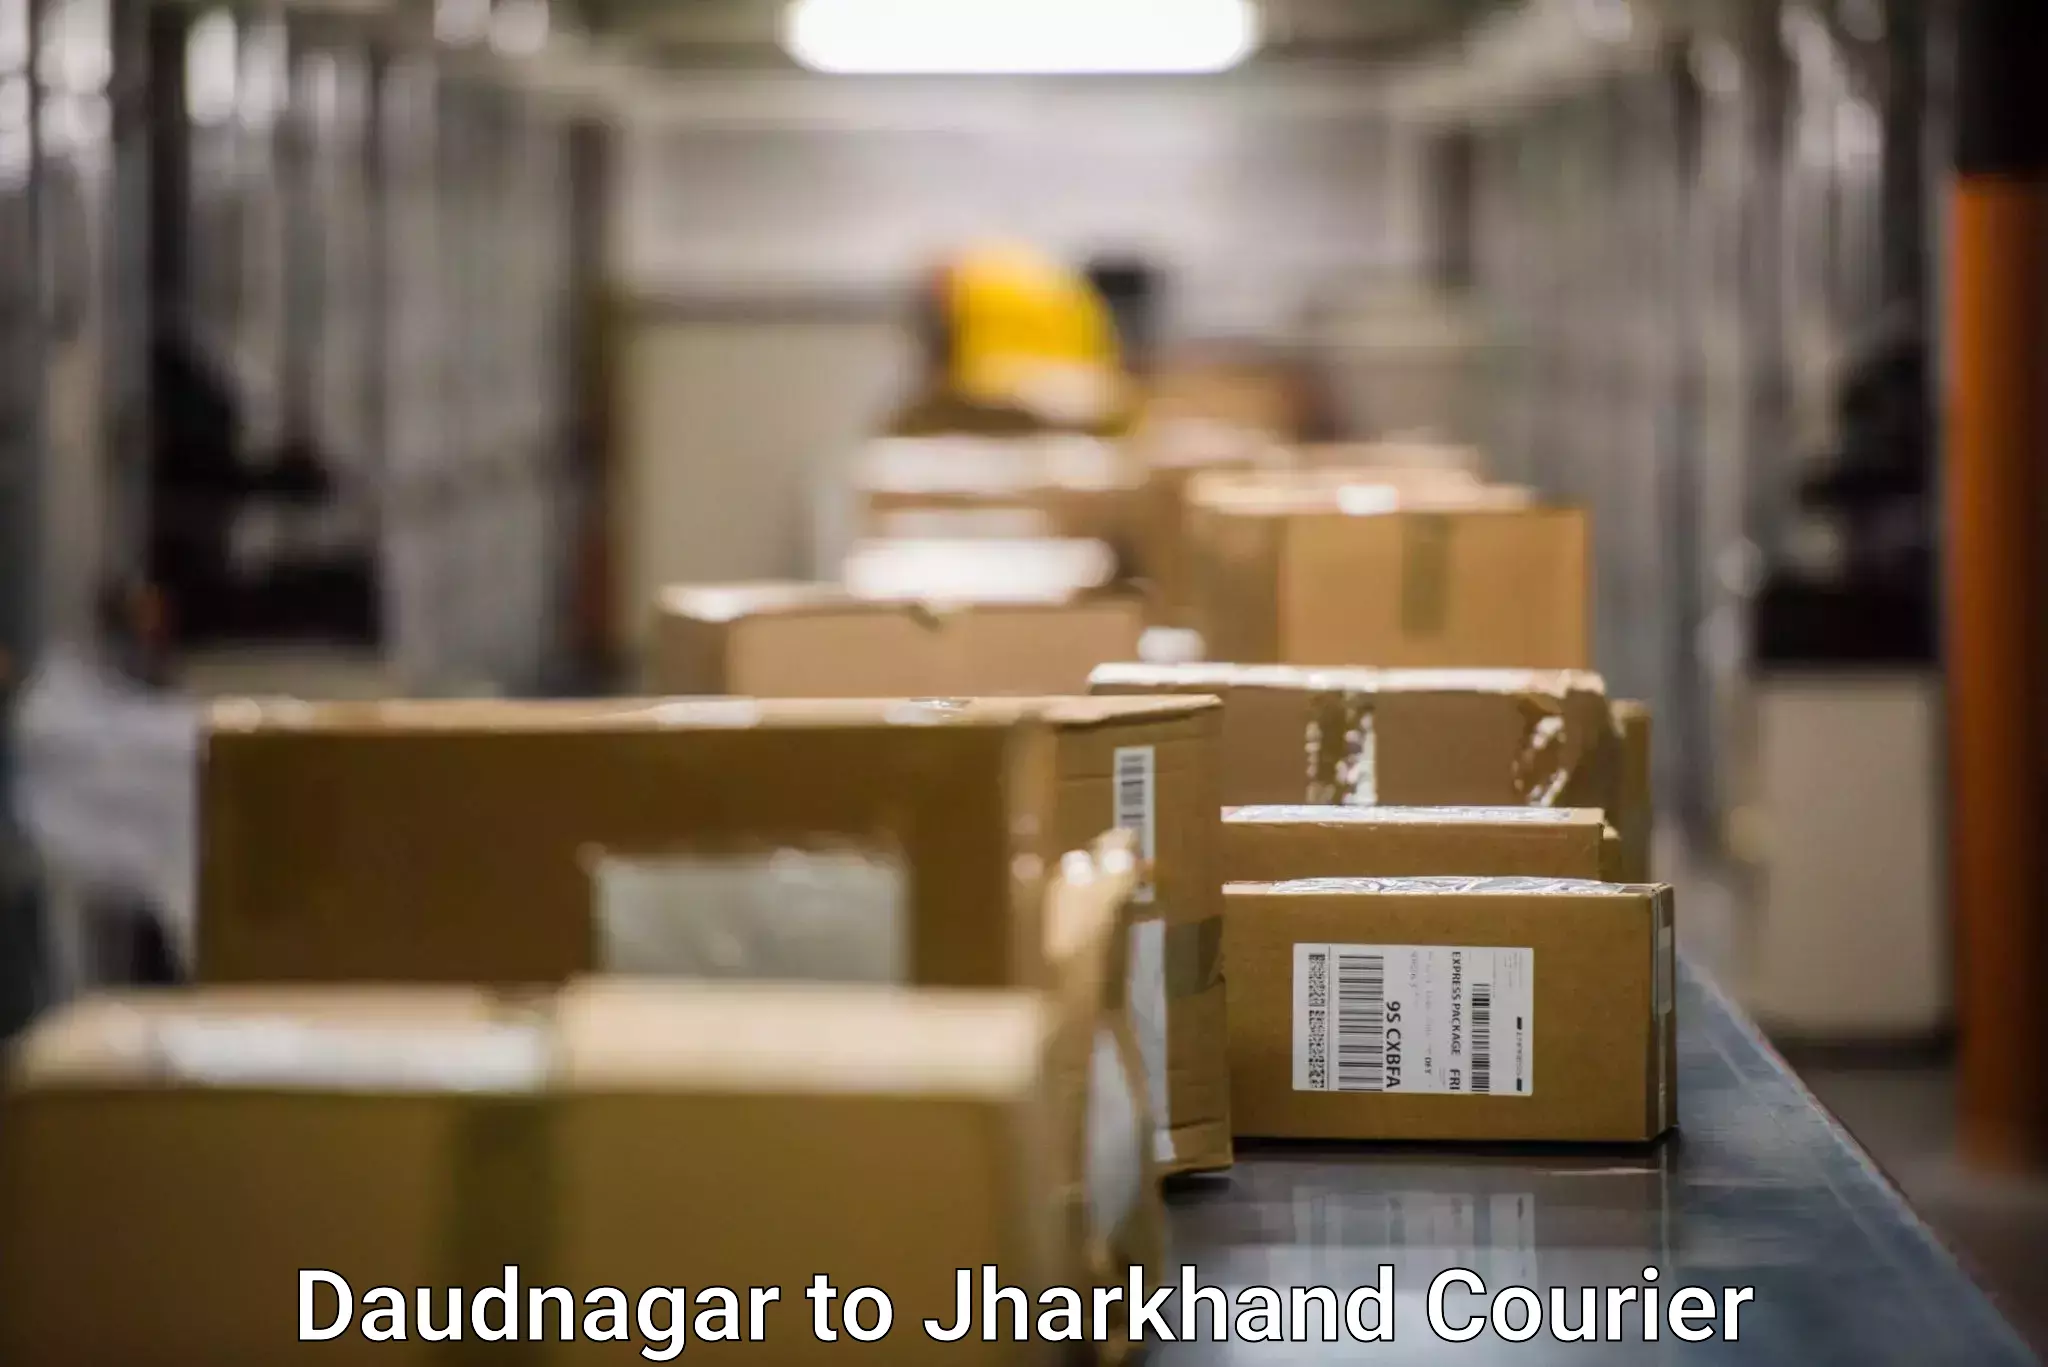 Express package handling Daudnagar to Jharkhand